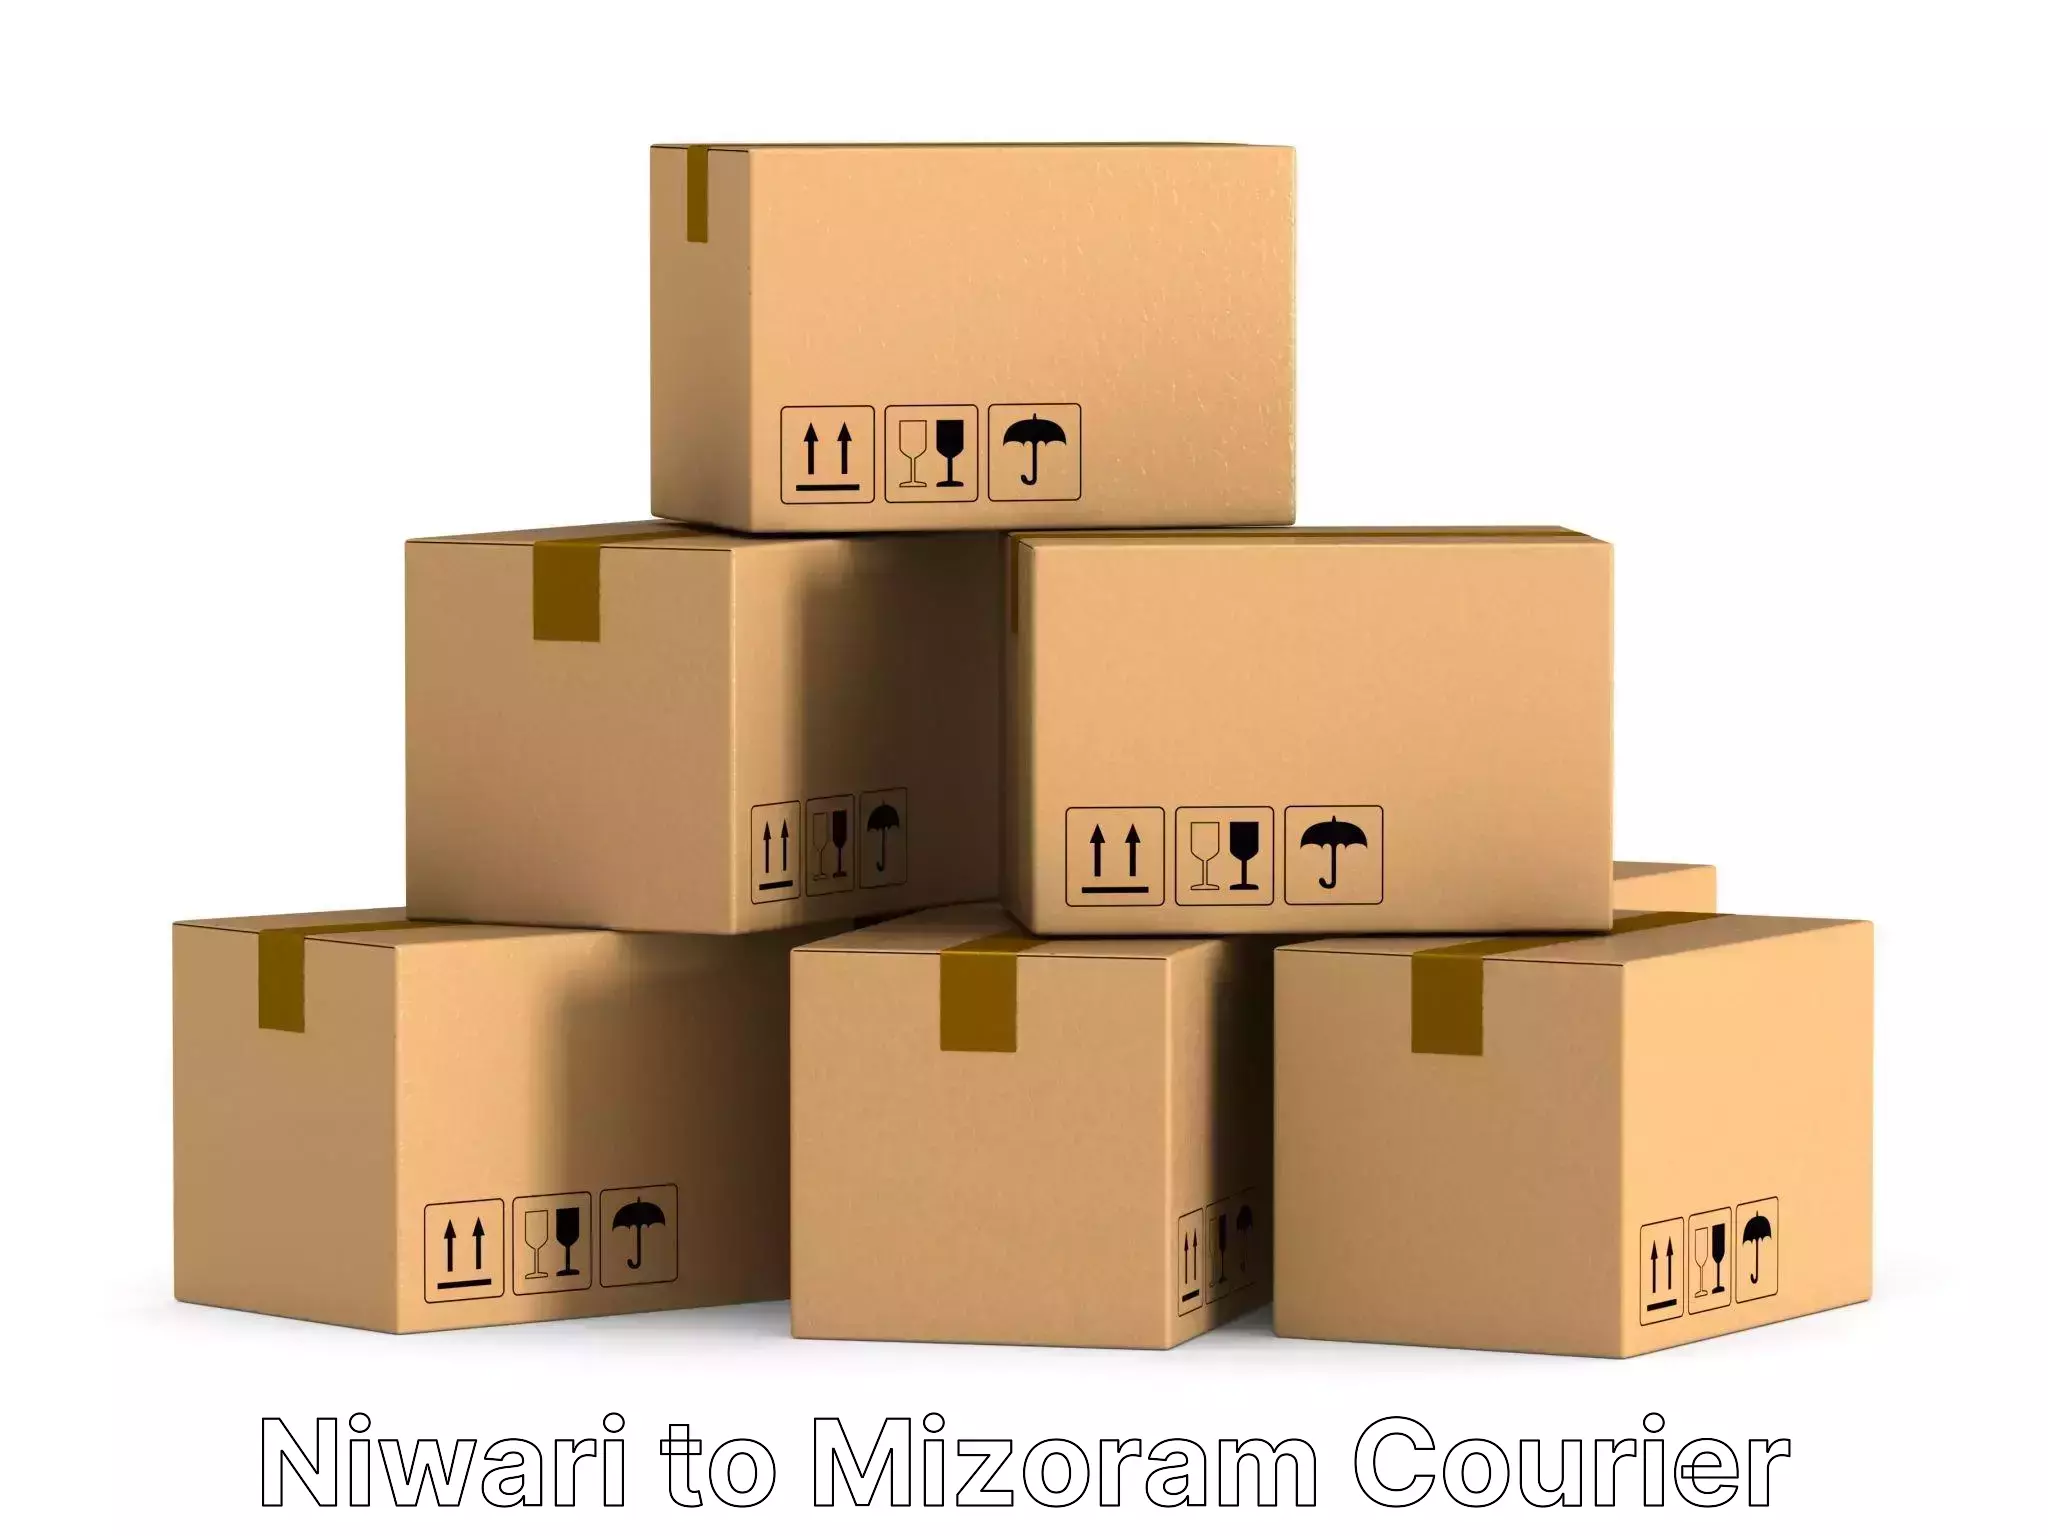 Furniture transport experts Niwari to Thenzawl